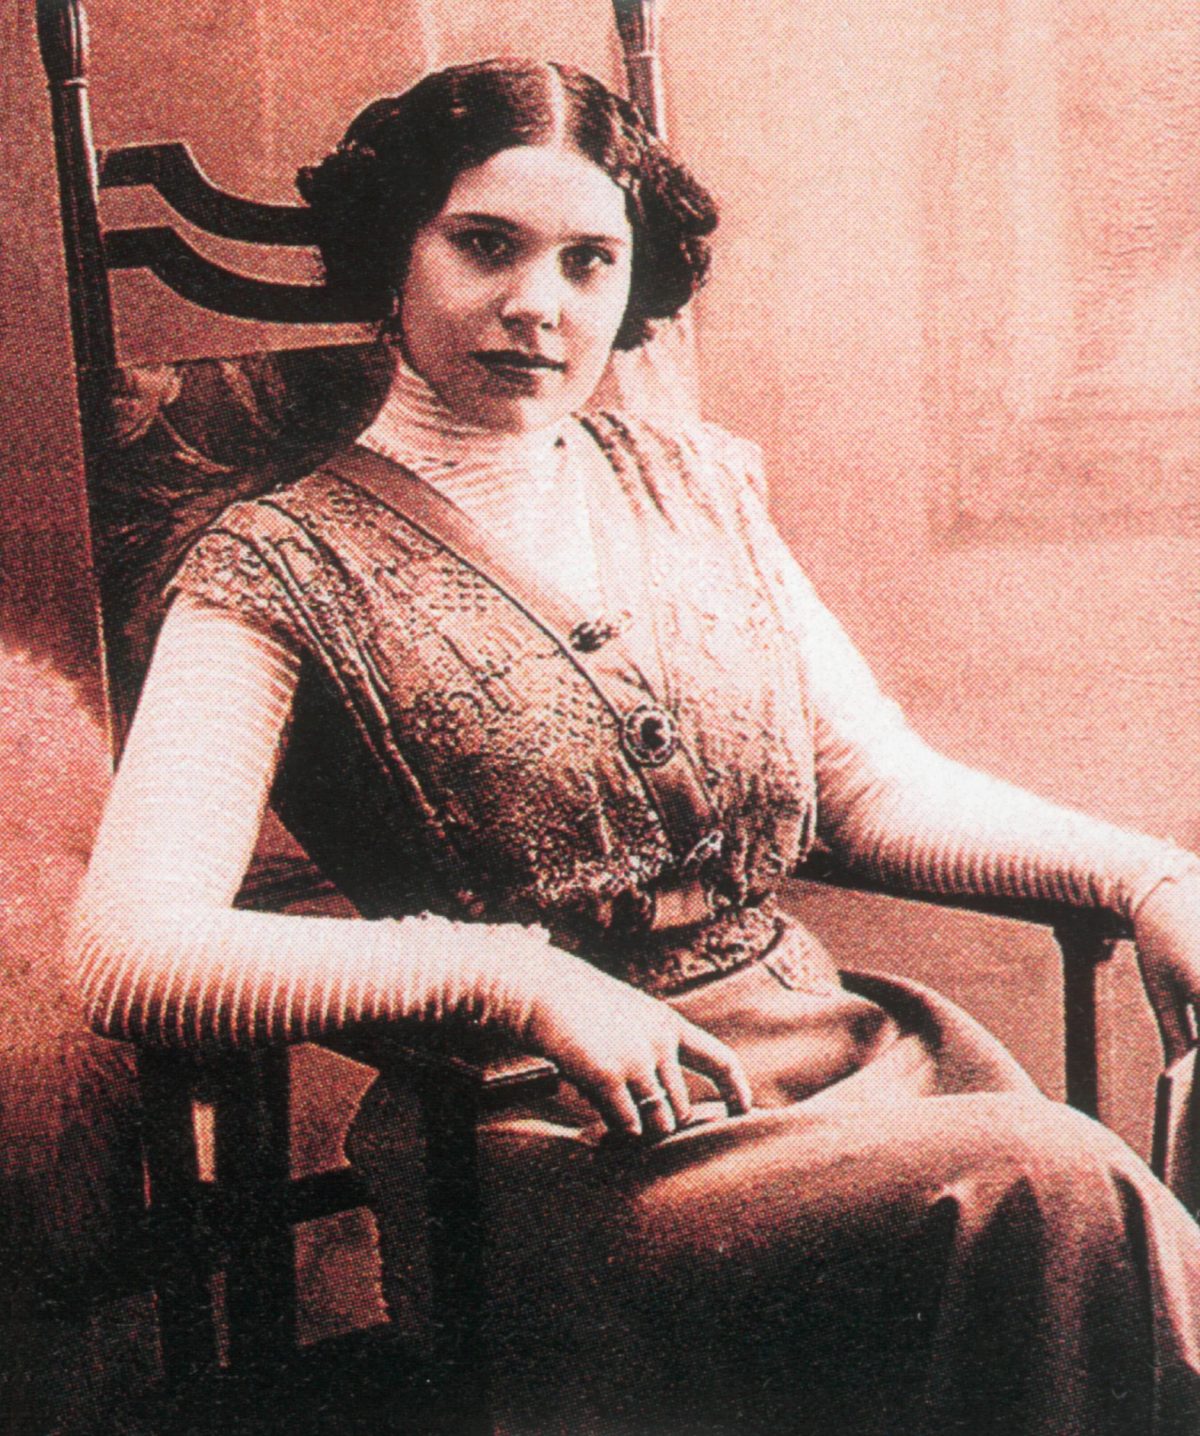 Nadezhda Plevitskaya